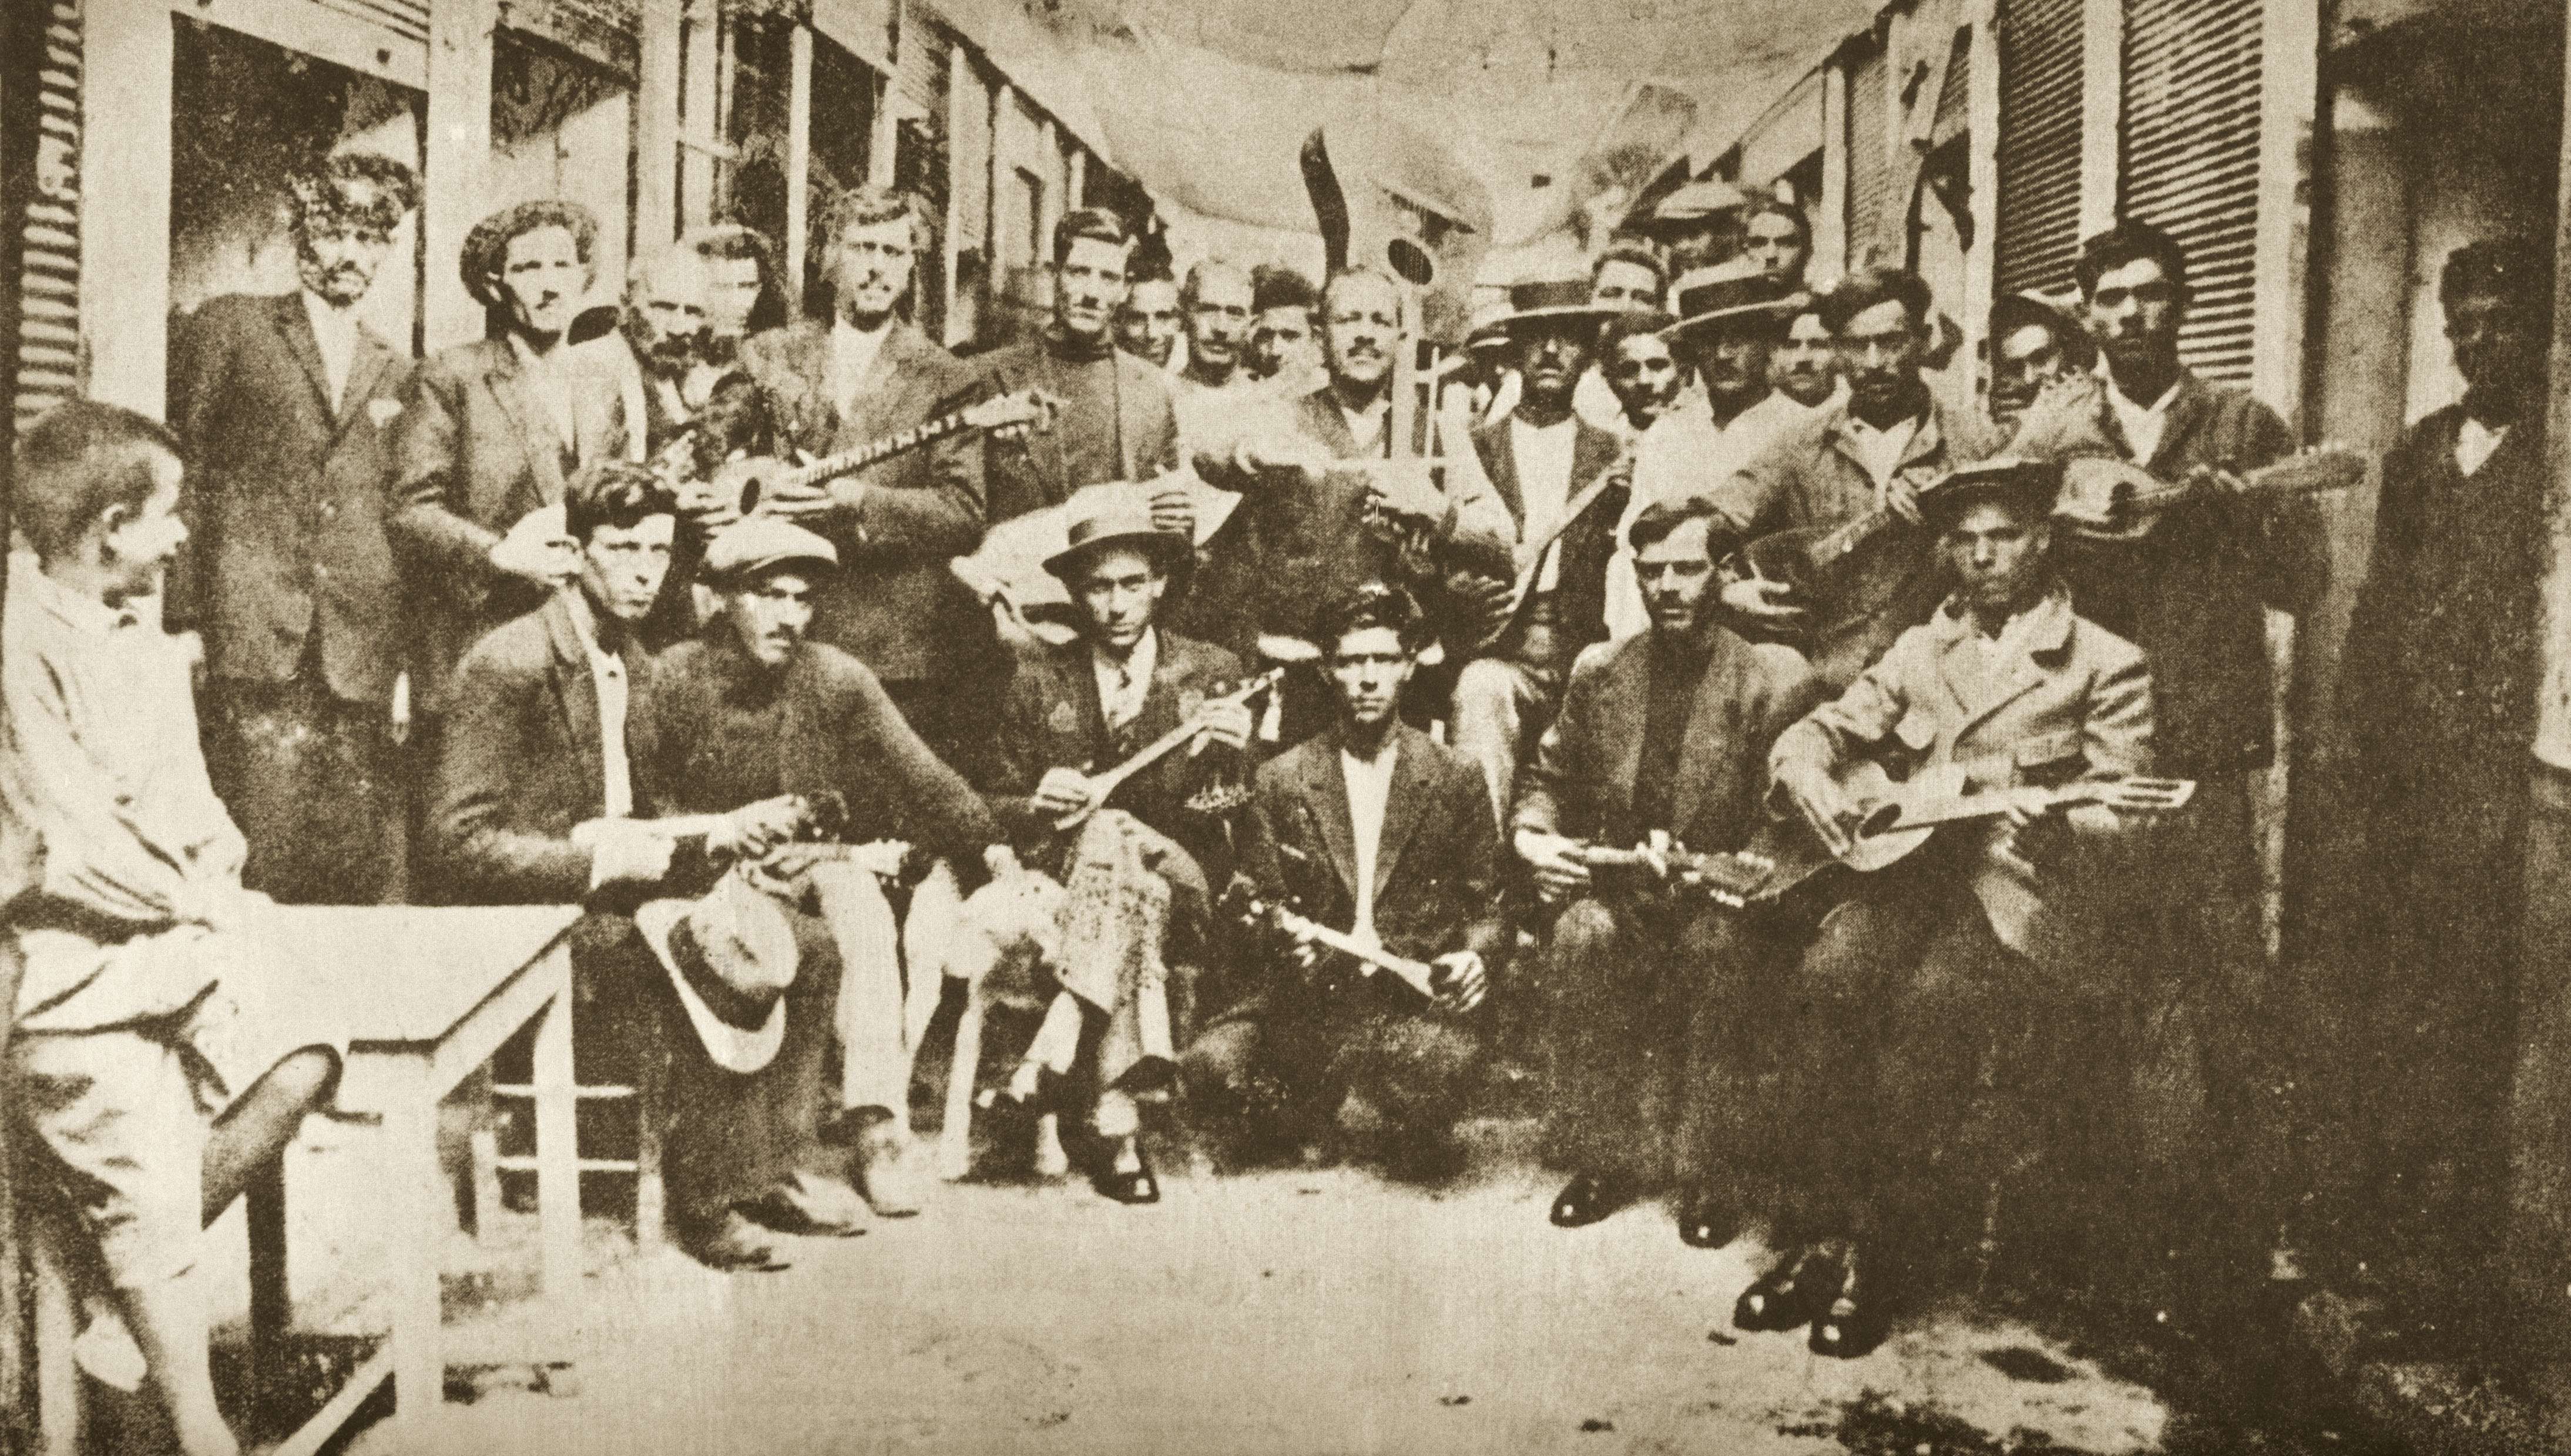 Ρεμπέτες στο Καραϊσκάκη, Πειραιάς (1933). Αριστερά ο Μάρκος Βαμβακάρης με μπουζούκι, στο κέντρο ο Μπάτης με την κιθάρα..